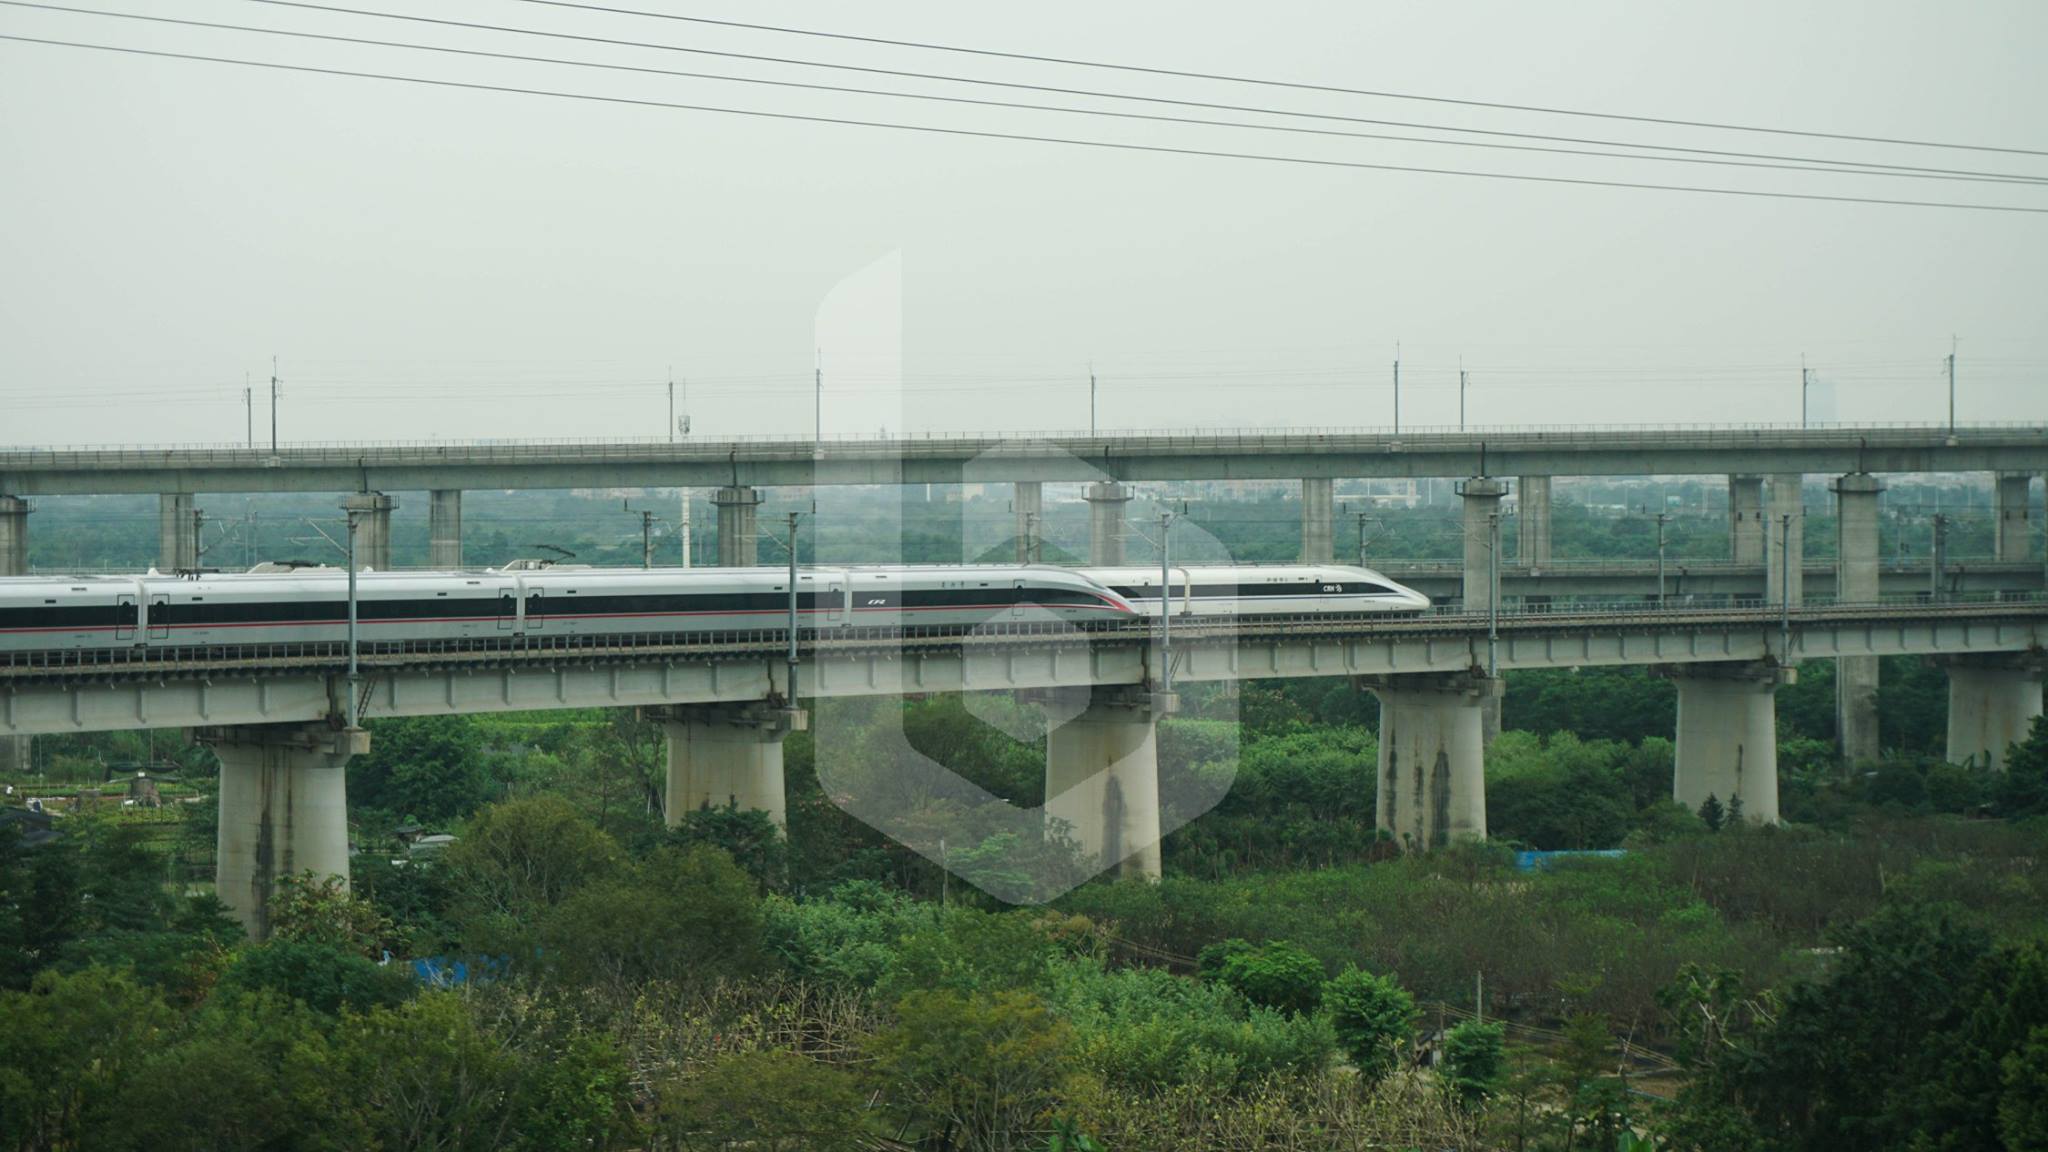 Hong Kong to Guangzhou by train